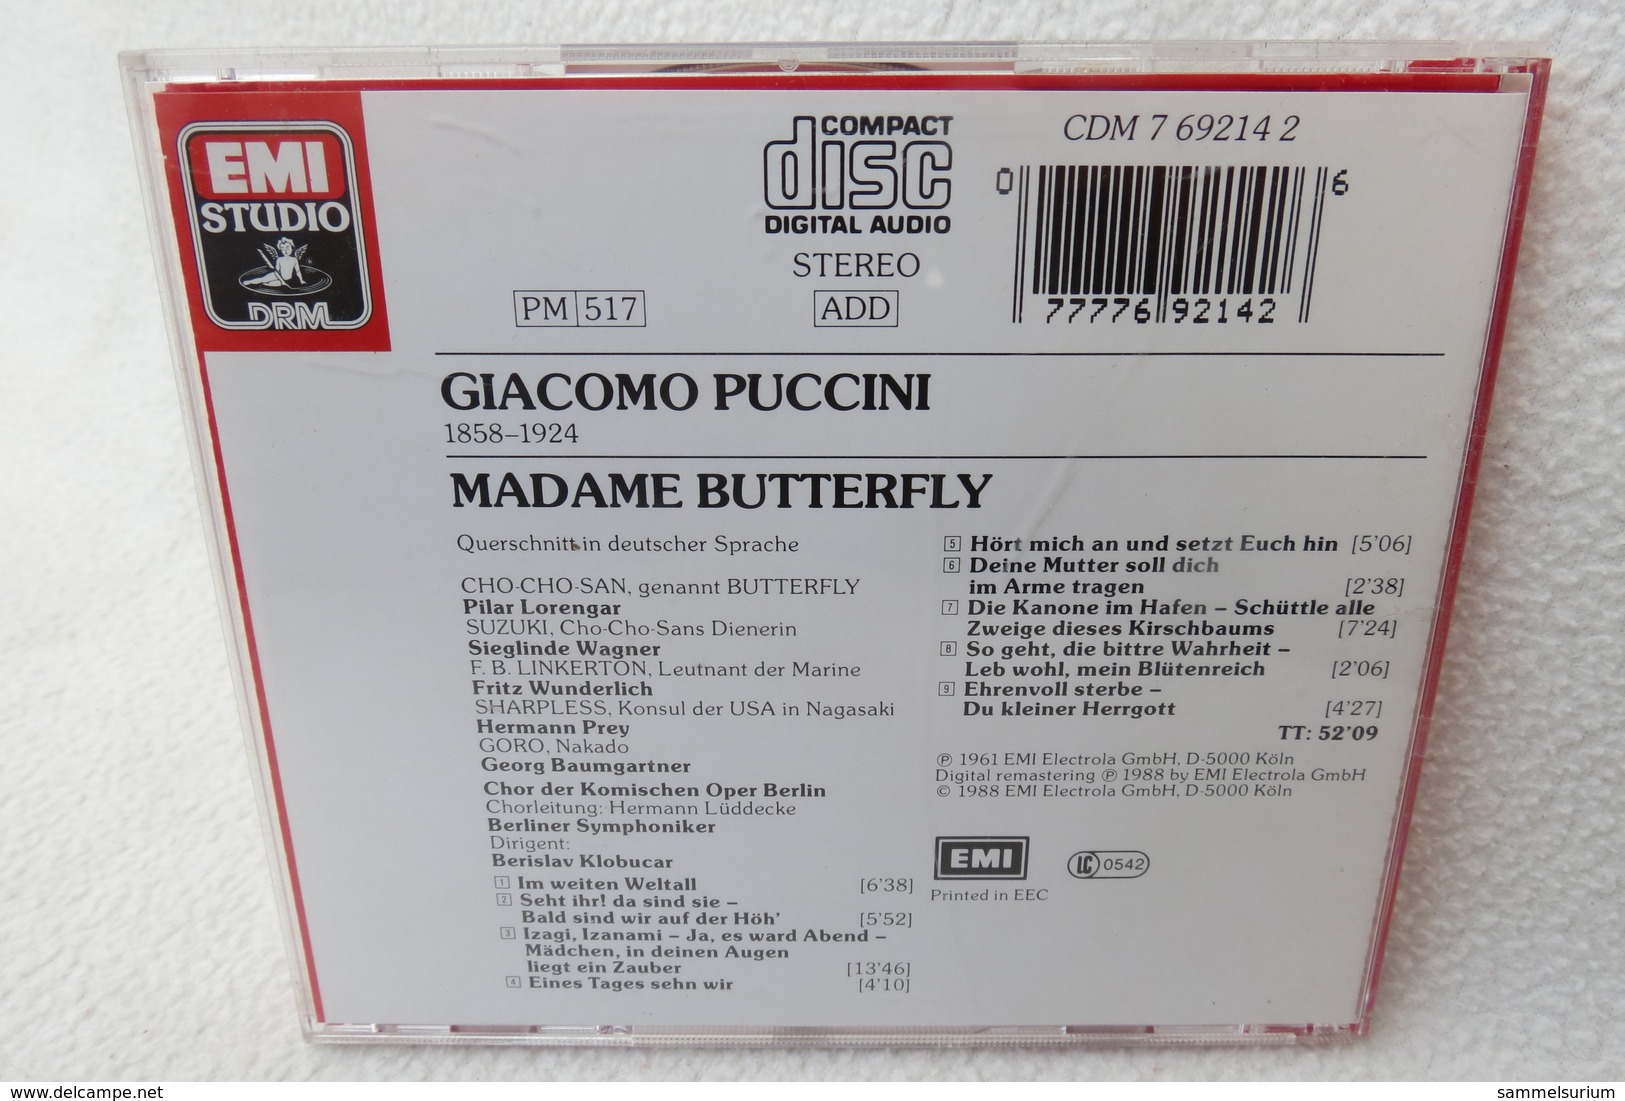 CD "Puccini" Madame Butterfly, Großer Querschnitt - Opera